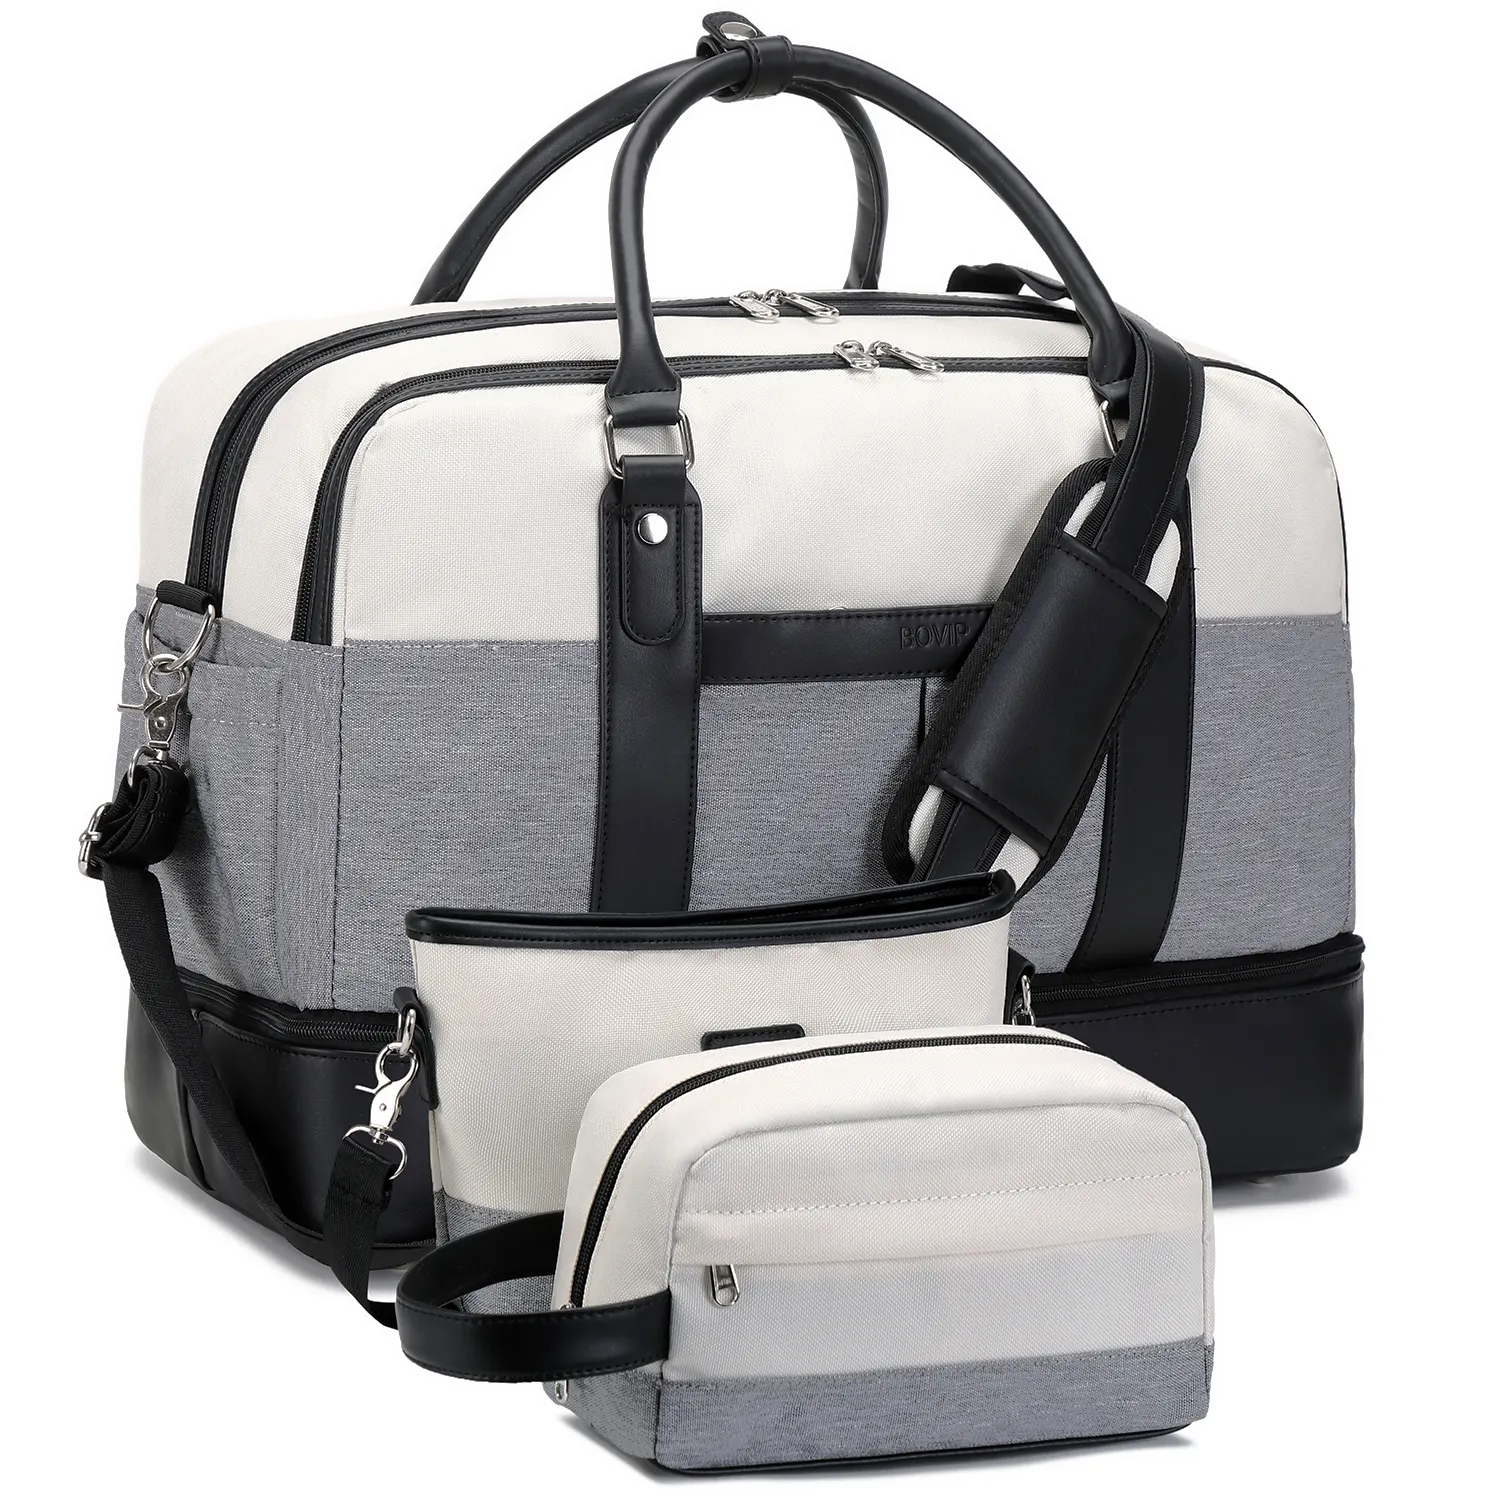 Nerlion Logo personnalisé sac à dos de sport femmes sac de voyage toile bagages bagage à main sac de sport étanche sac de week-end